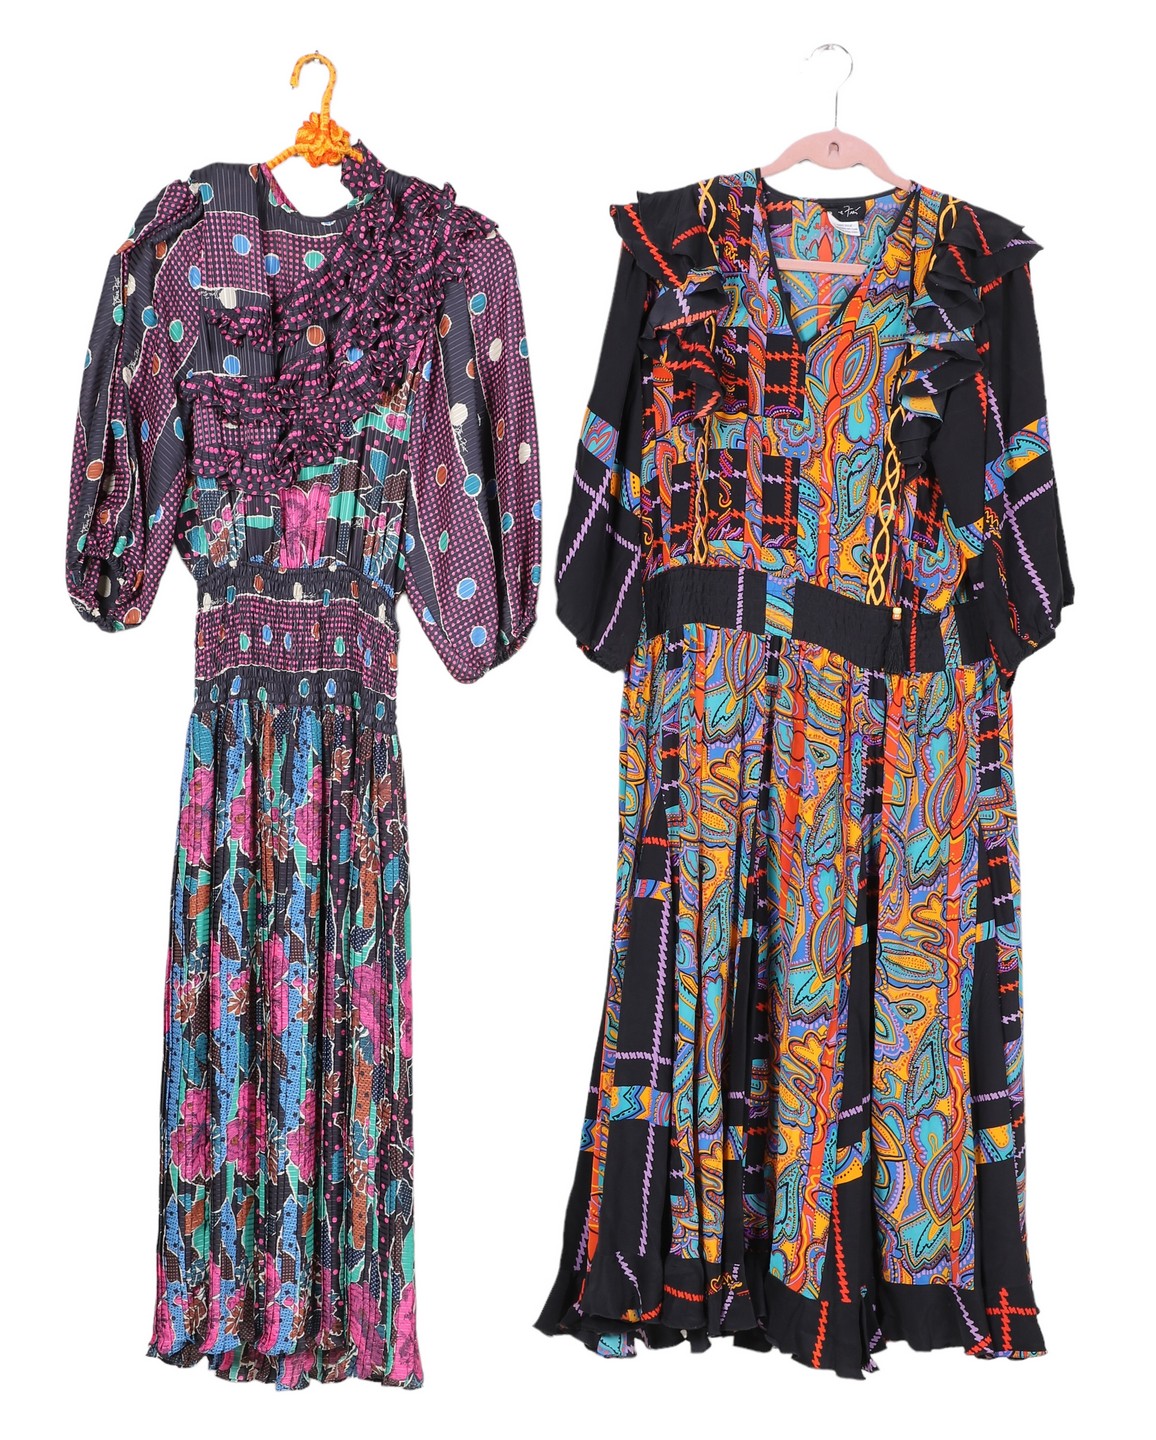 (2) Diane Fres patterned dresses, (1)